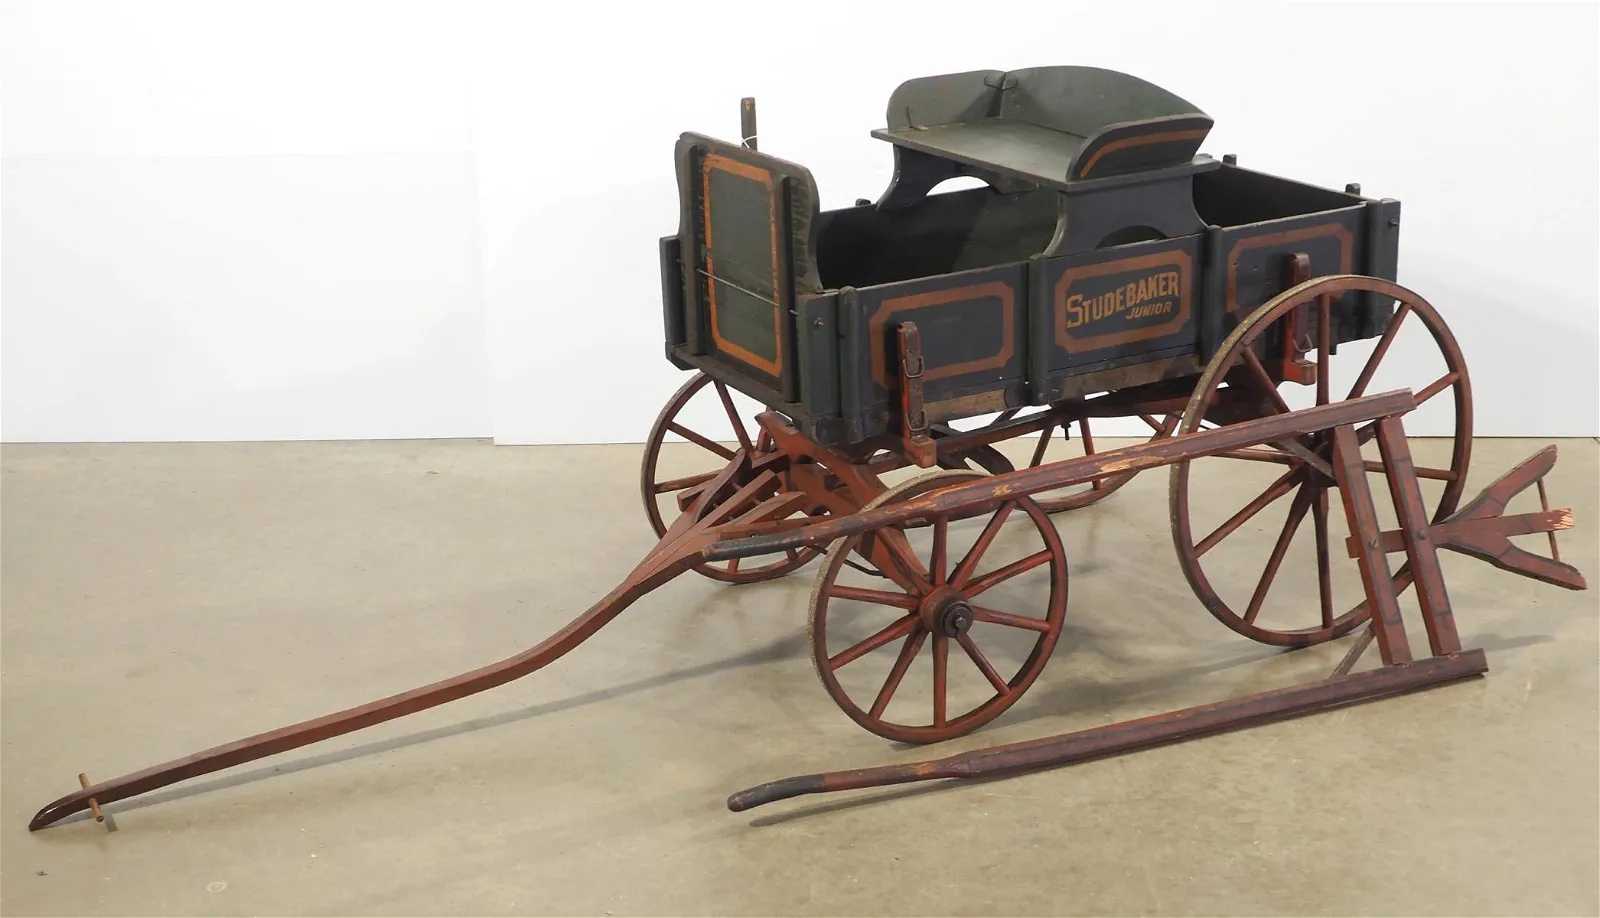 Studebaker Junior goat wagon, estimated at $100-$200 at Chupp.